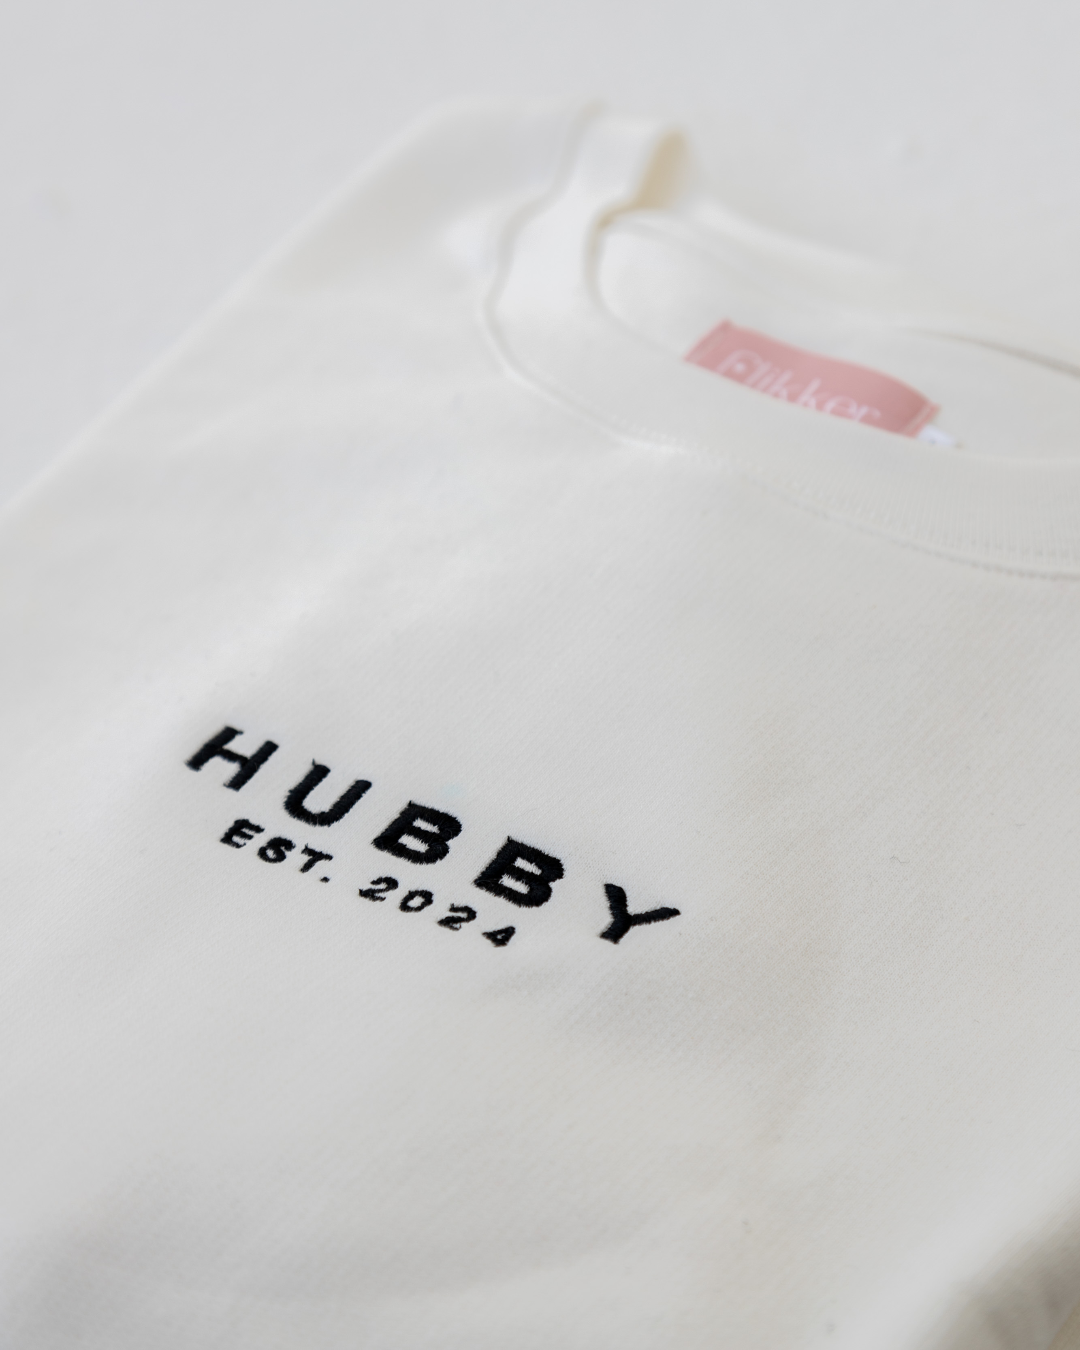 'Hubby Est' Sweatshirt | PRE ORDER: 4-5 Week Lead Time